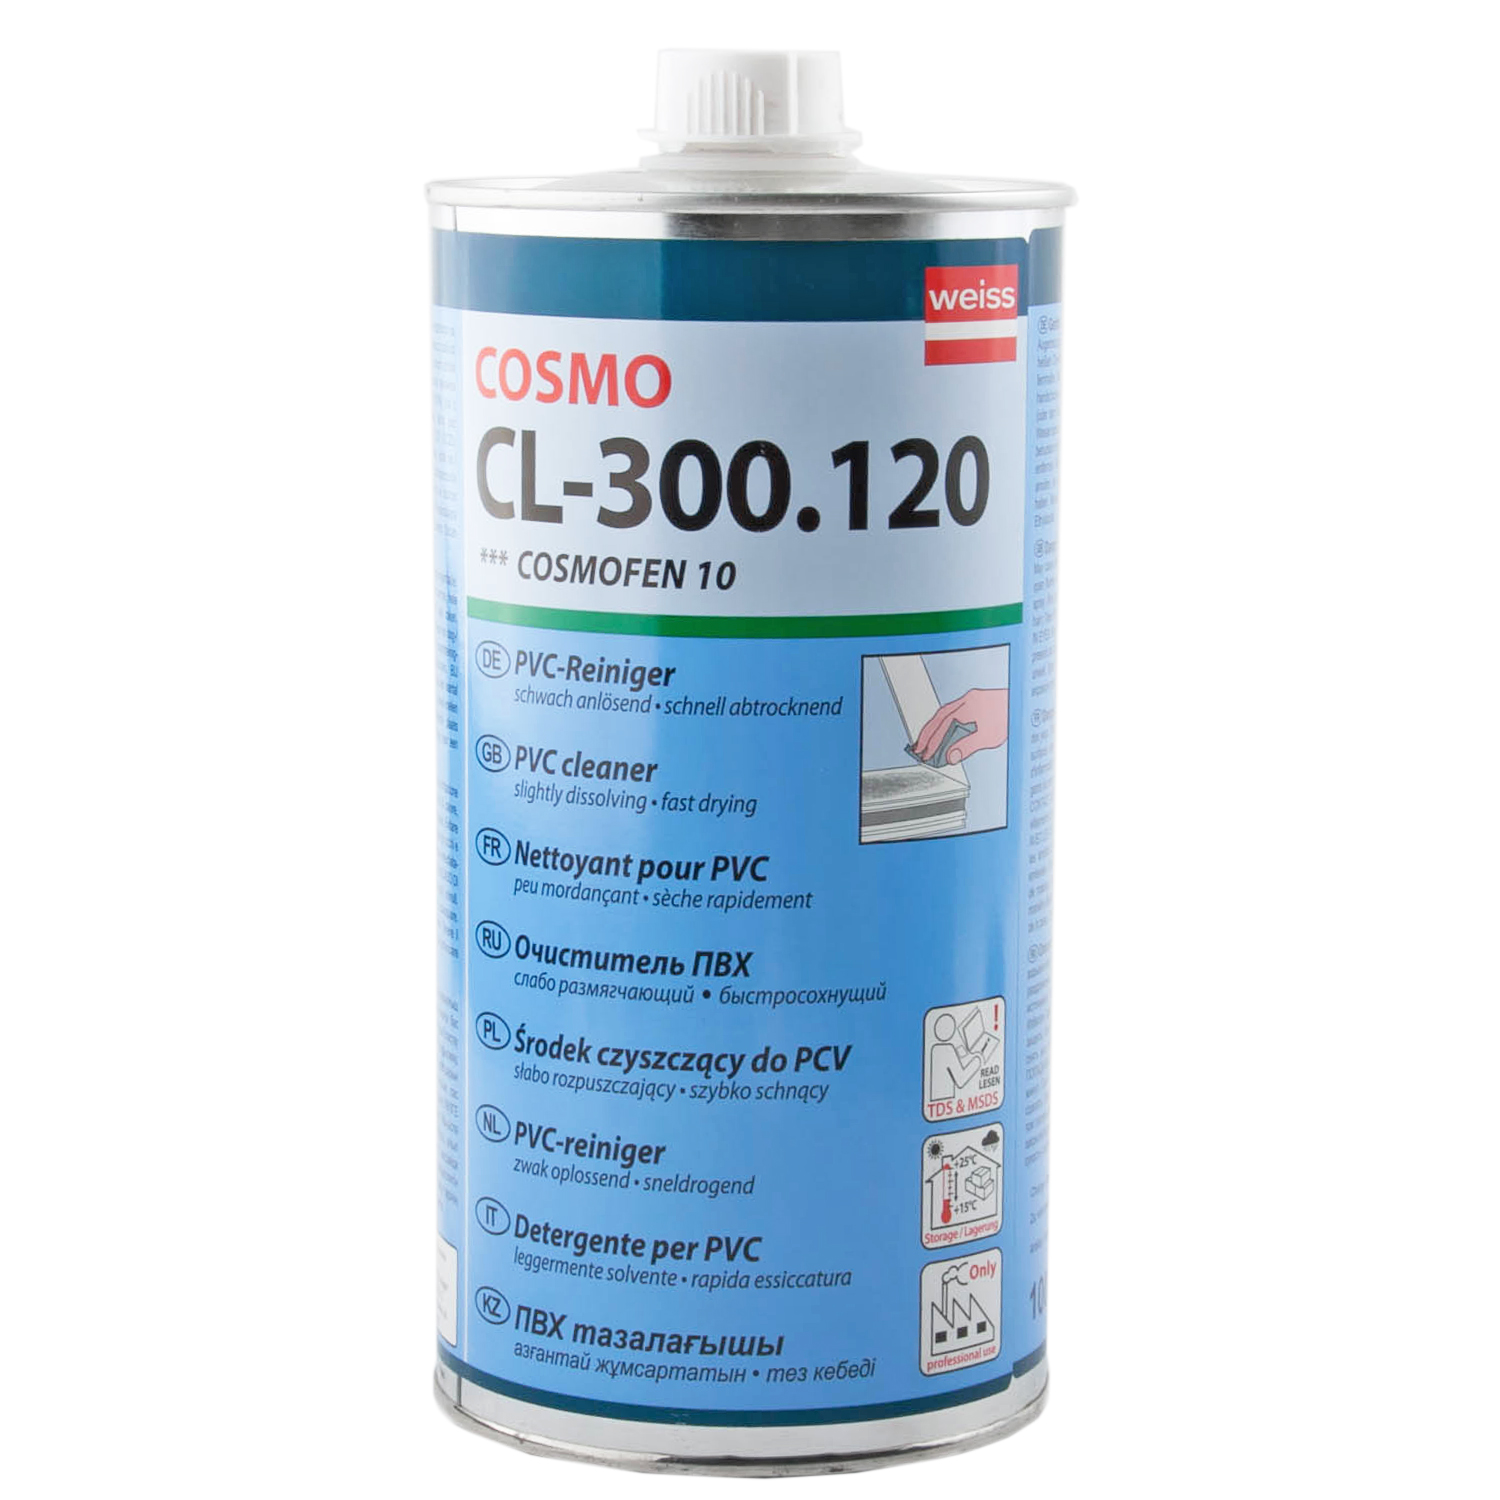 Растворитель скотча. Очиститель Cosmofen 20 (Cosmo CL-300.140) 1 литр. Cosmofen 10 1l CL-300.120. Cosmo CL-300.120. Космофен растворитель для пластиковых окон.